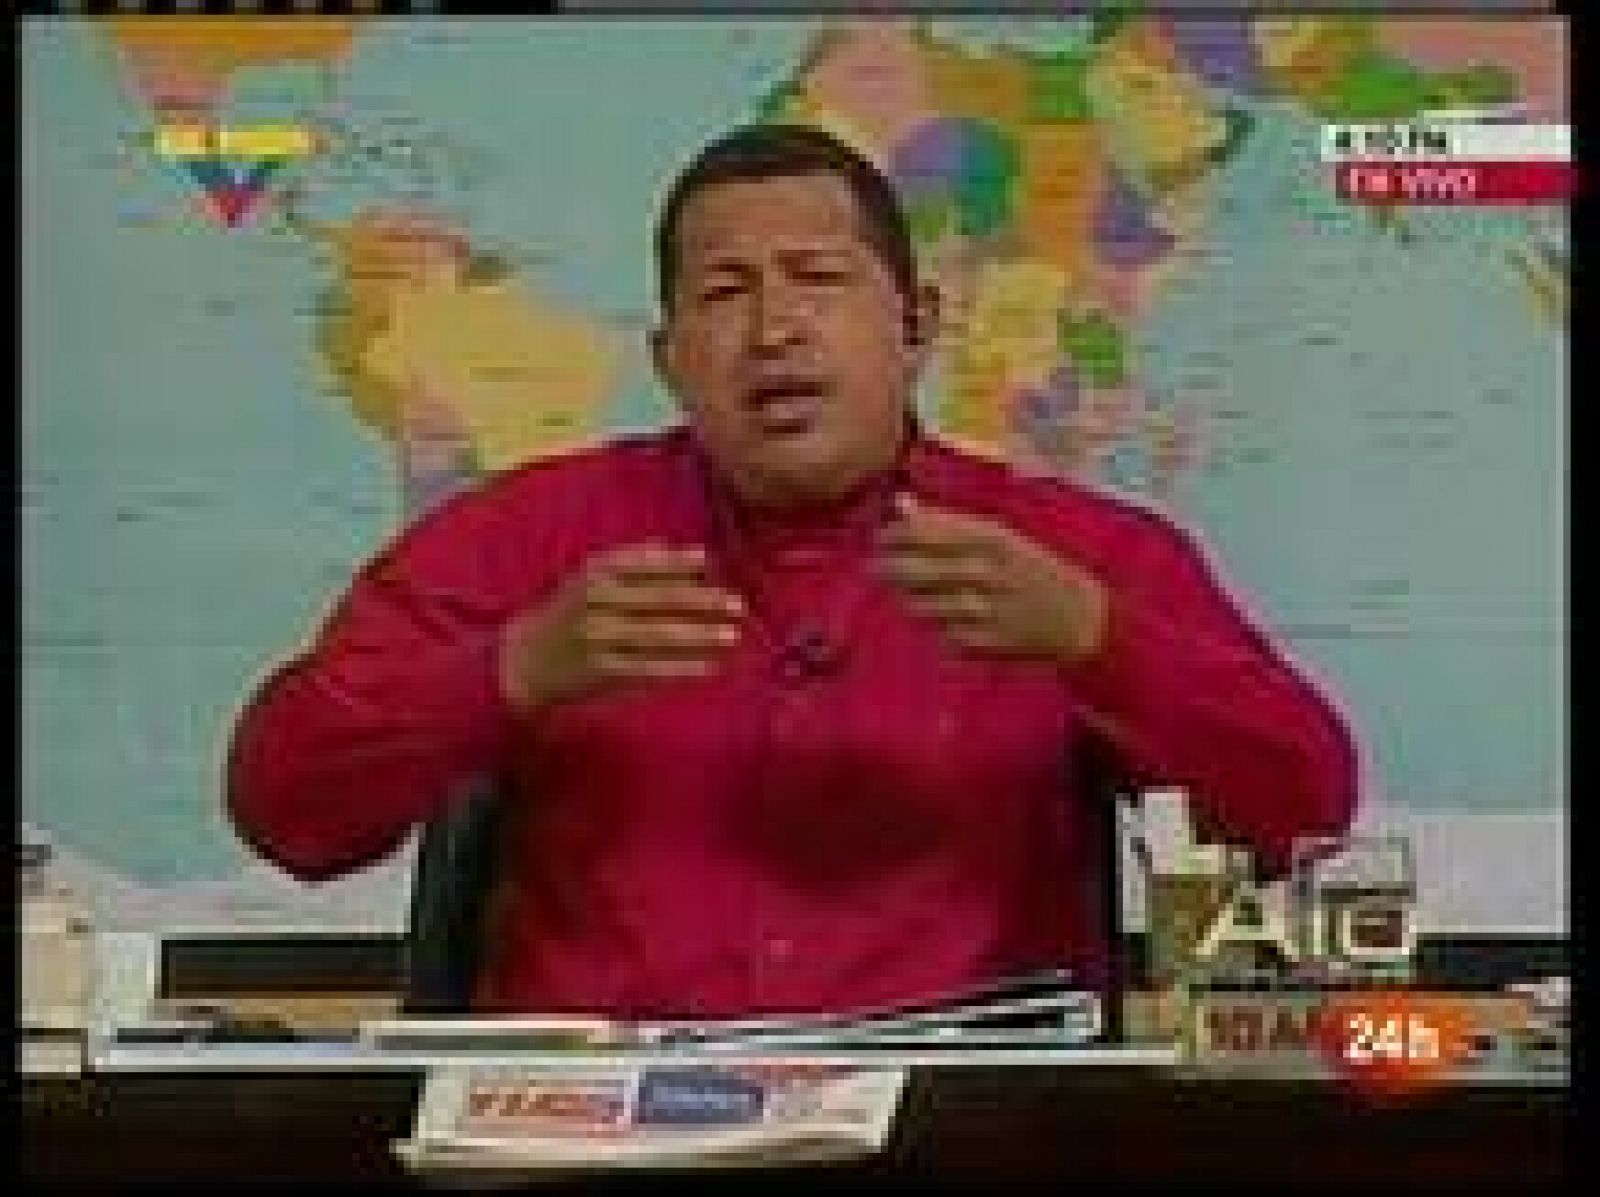  El presidente venezolano, Hugo Chávez, ha anunciado en su progrtama de televisión 'Aló Presidente' su intención de lanzar un programa nuclear con fines pacíficos. 